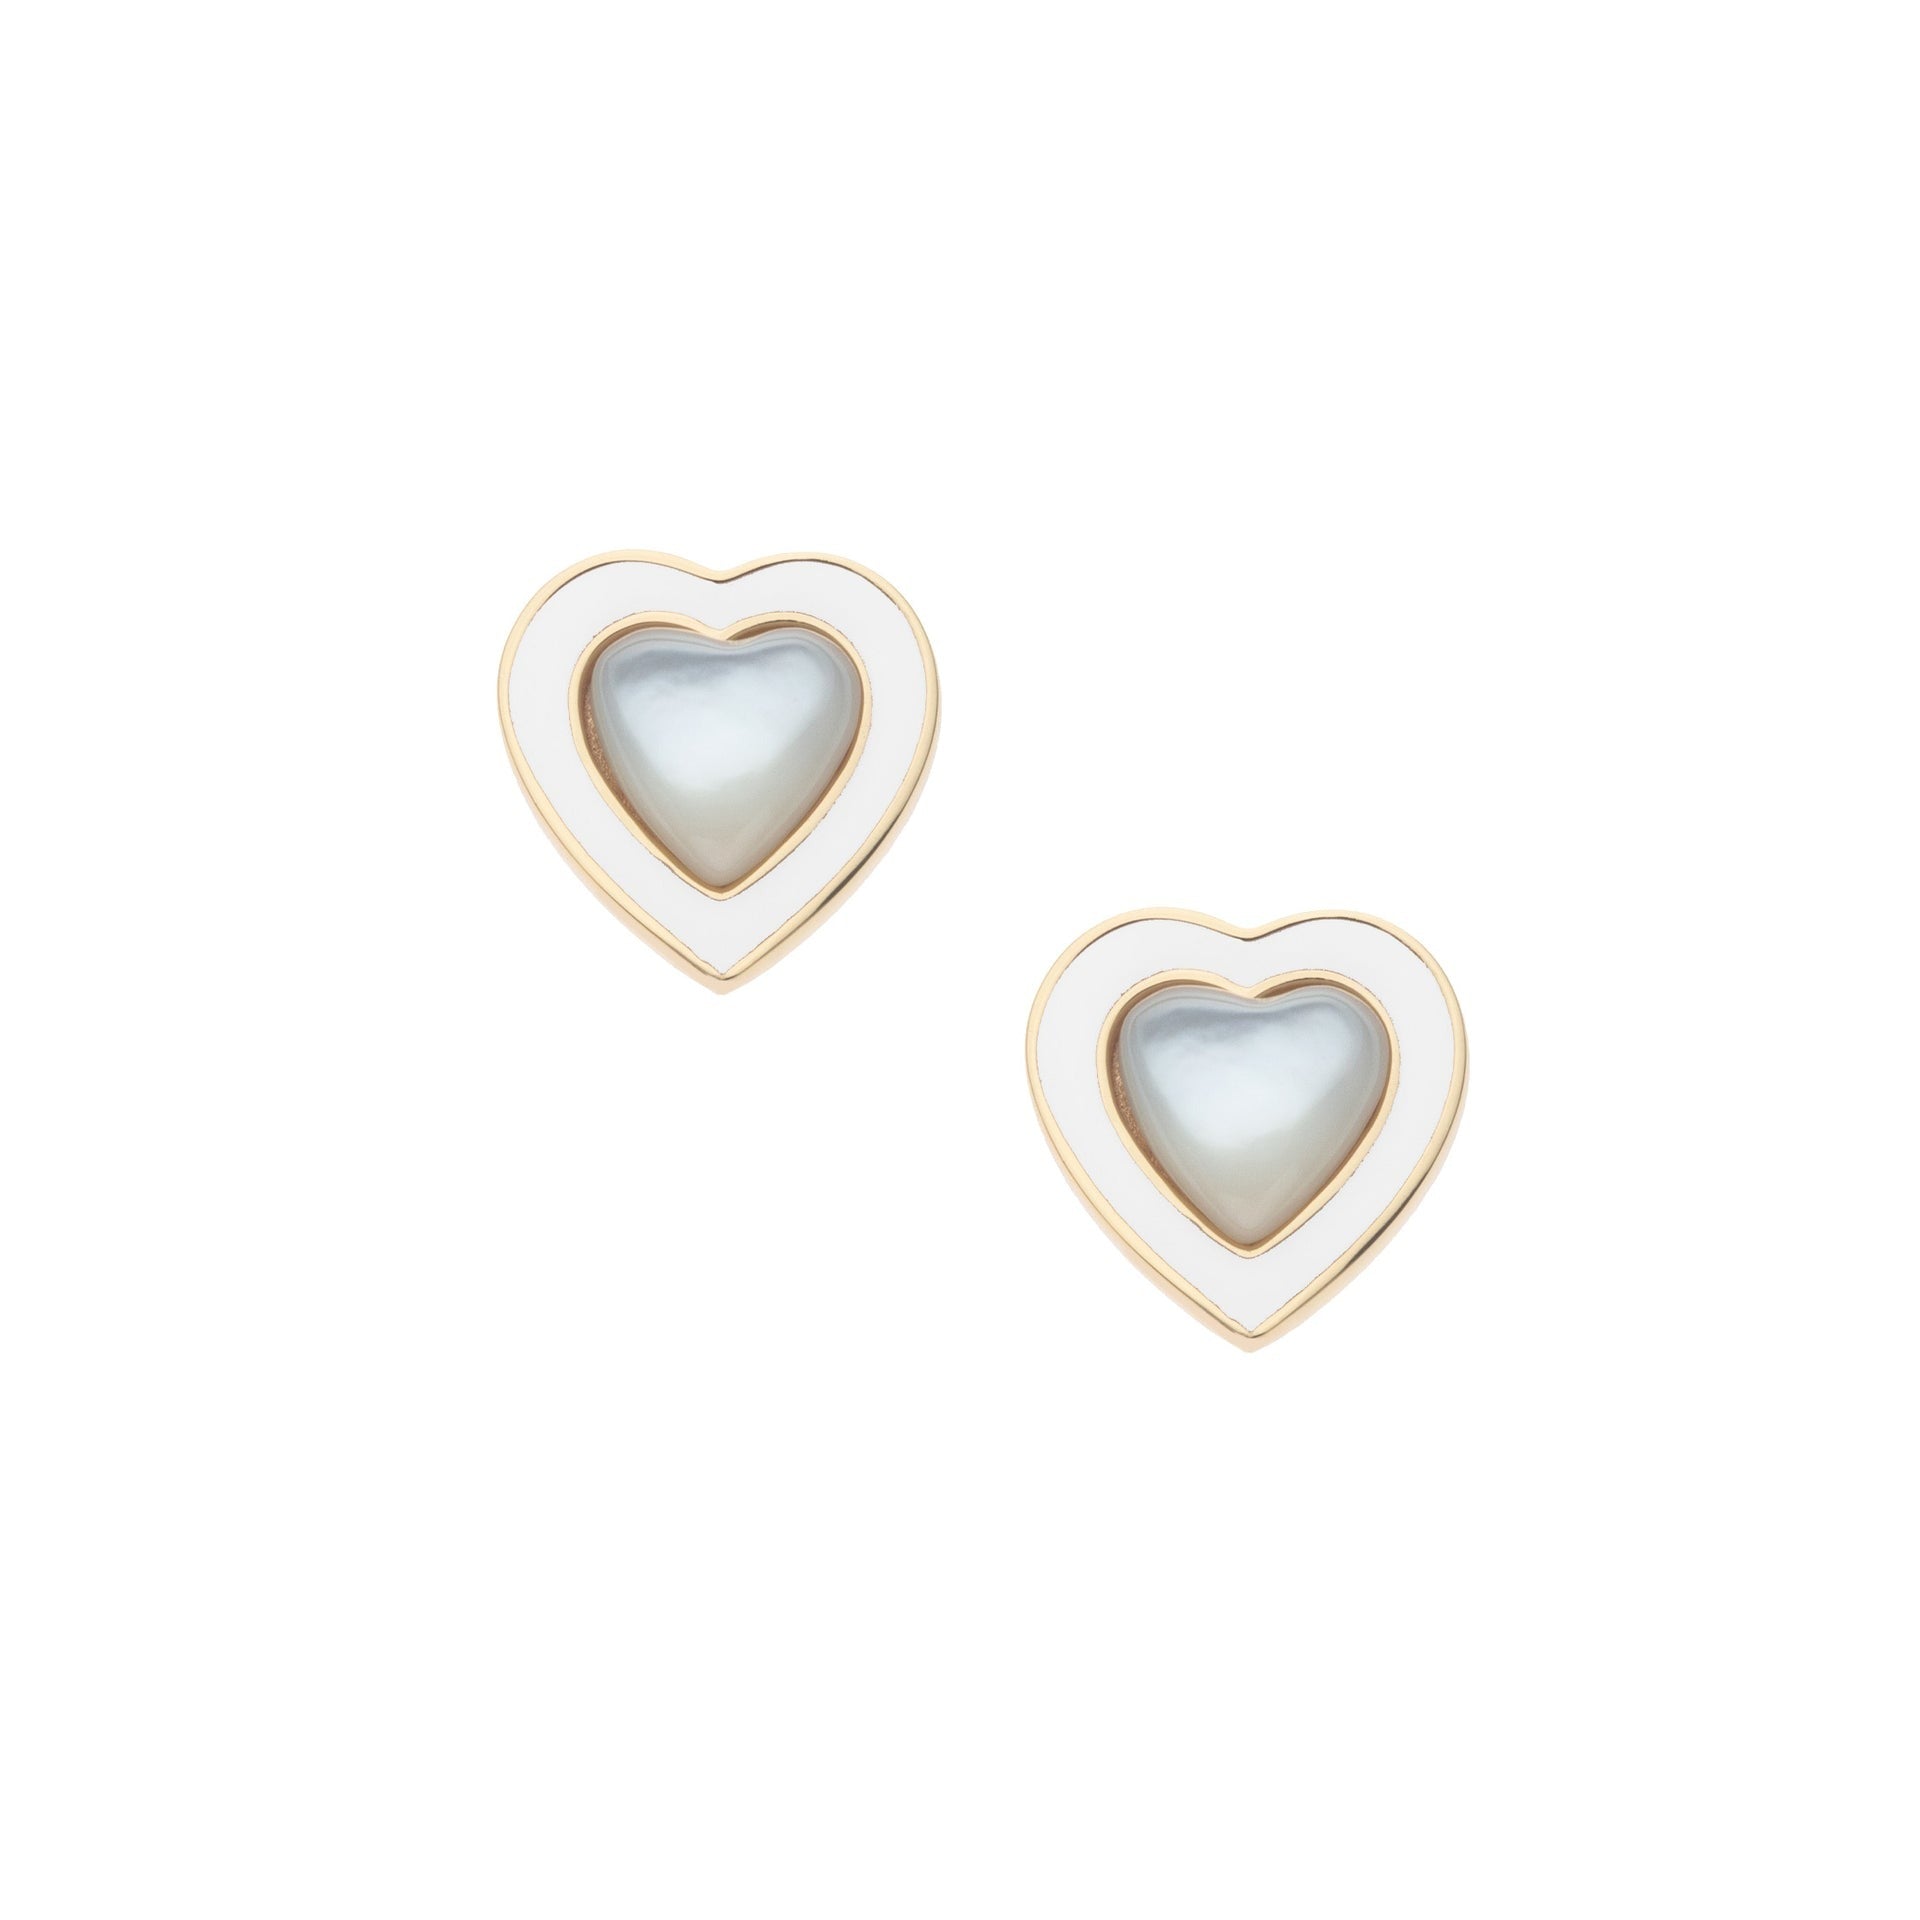 Jane Win LOVE Petite Enchanted Heart Earrings Pearl